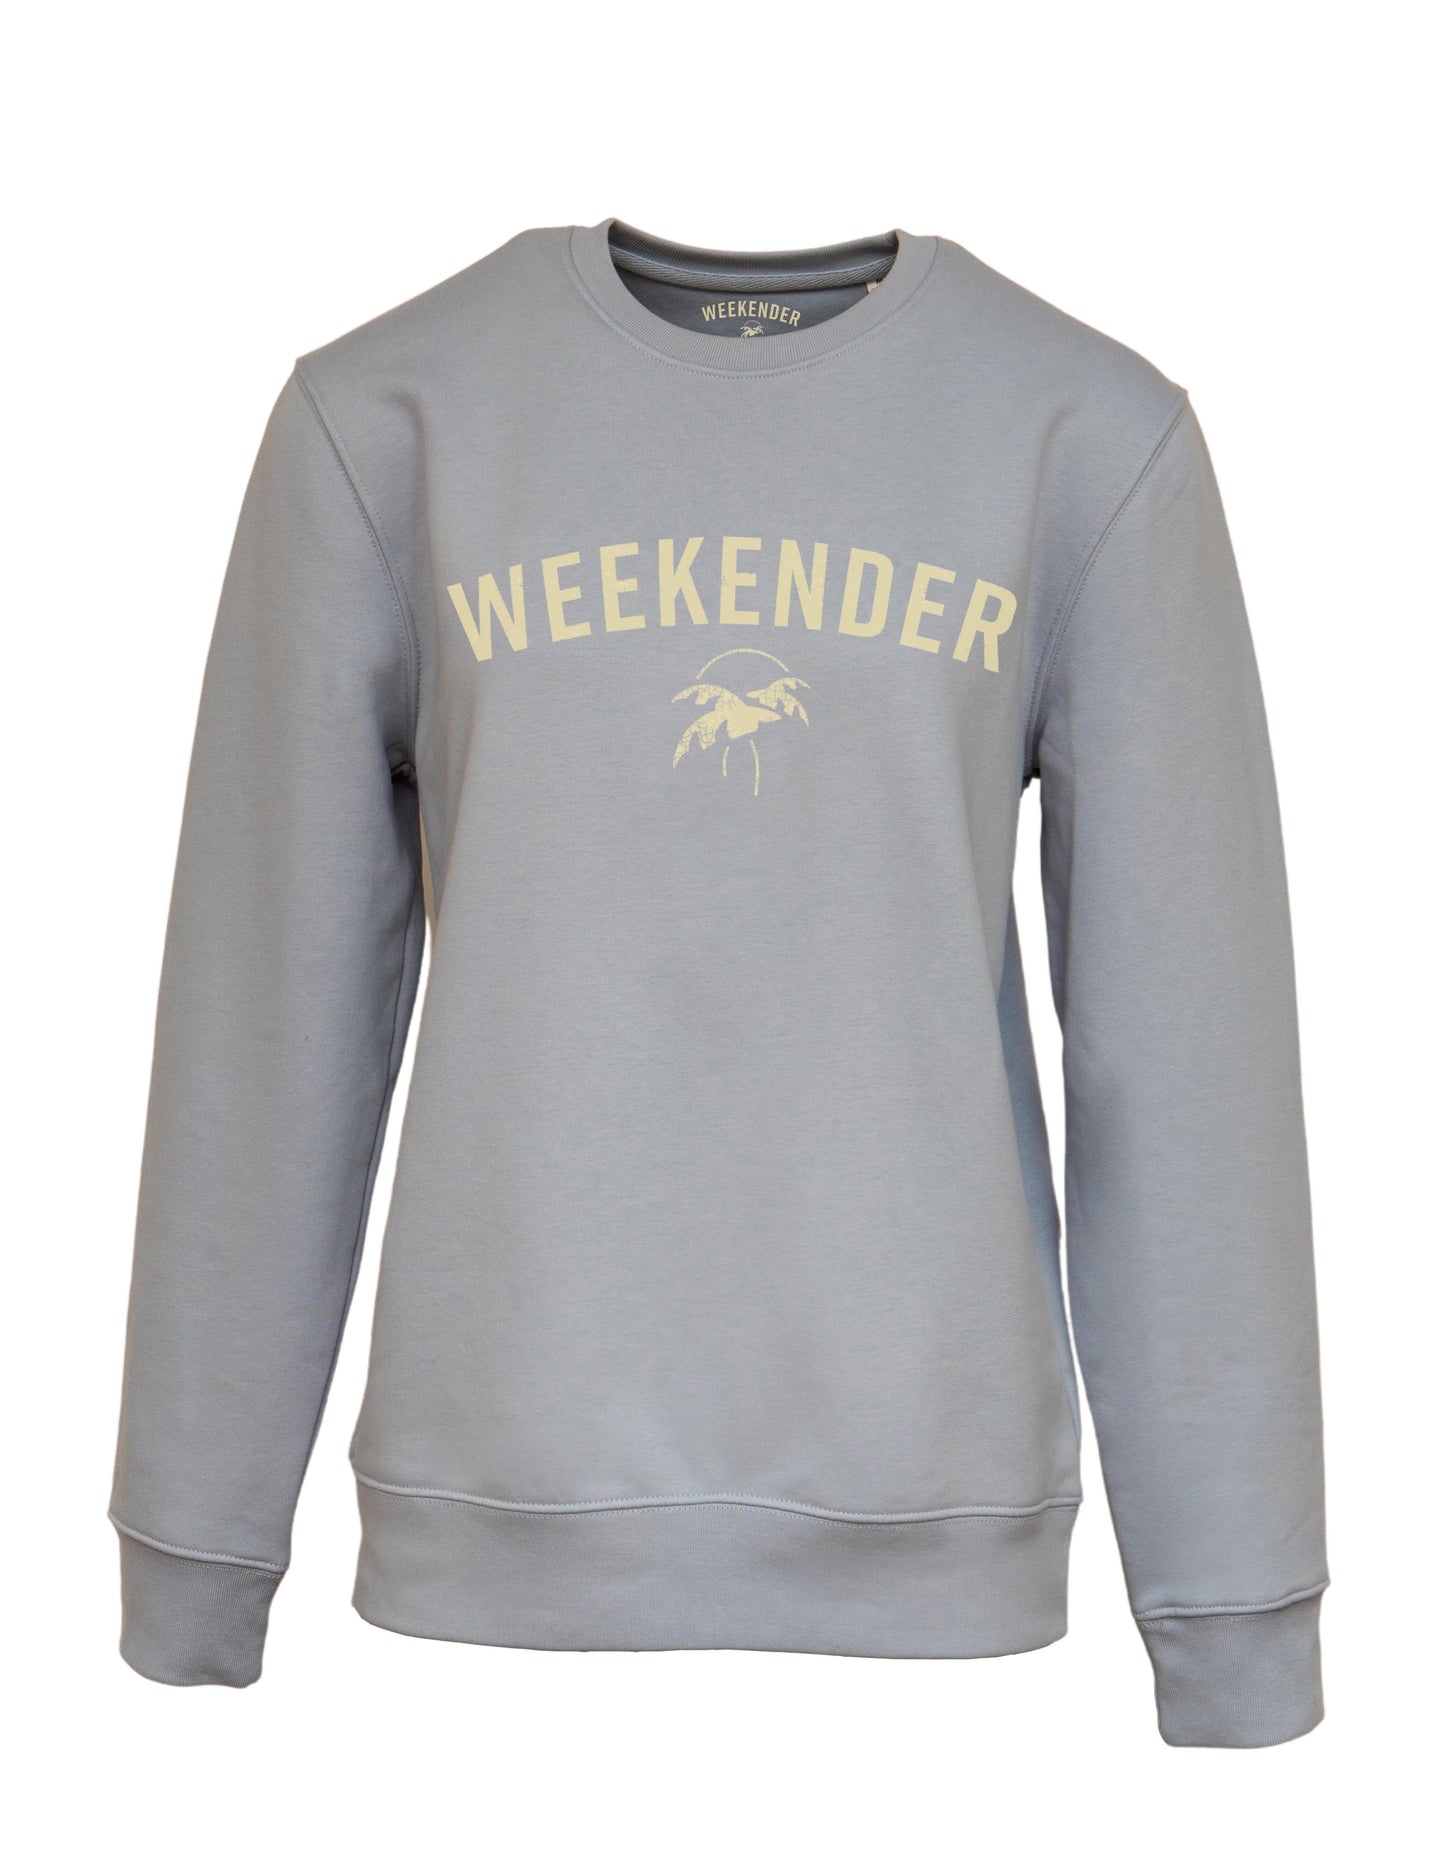 The Weekender Sweatshirt in Powder Blue